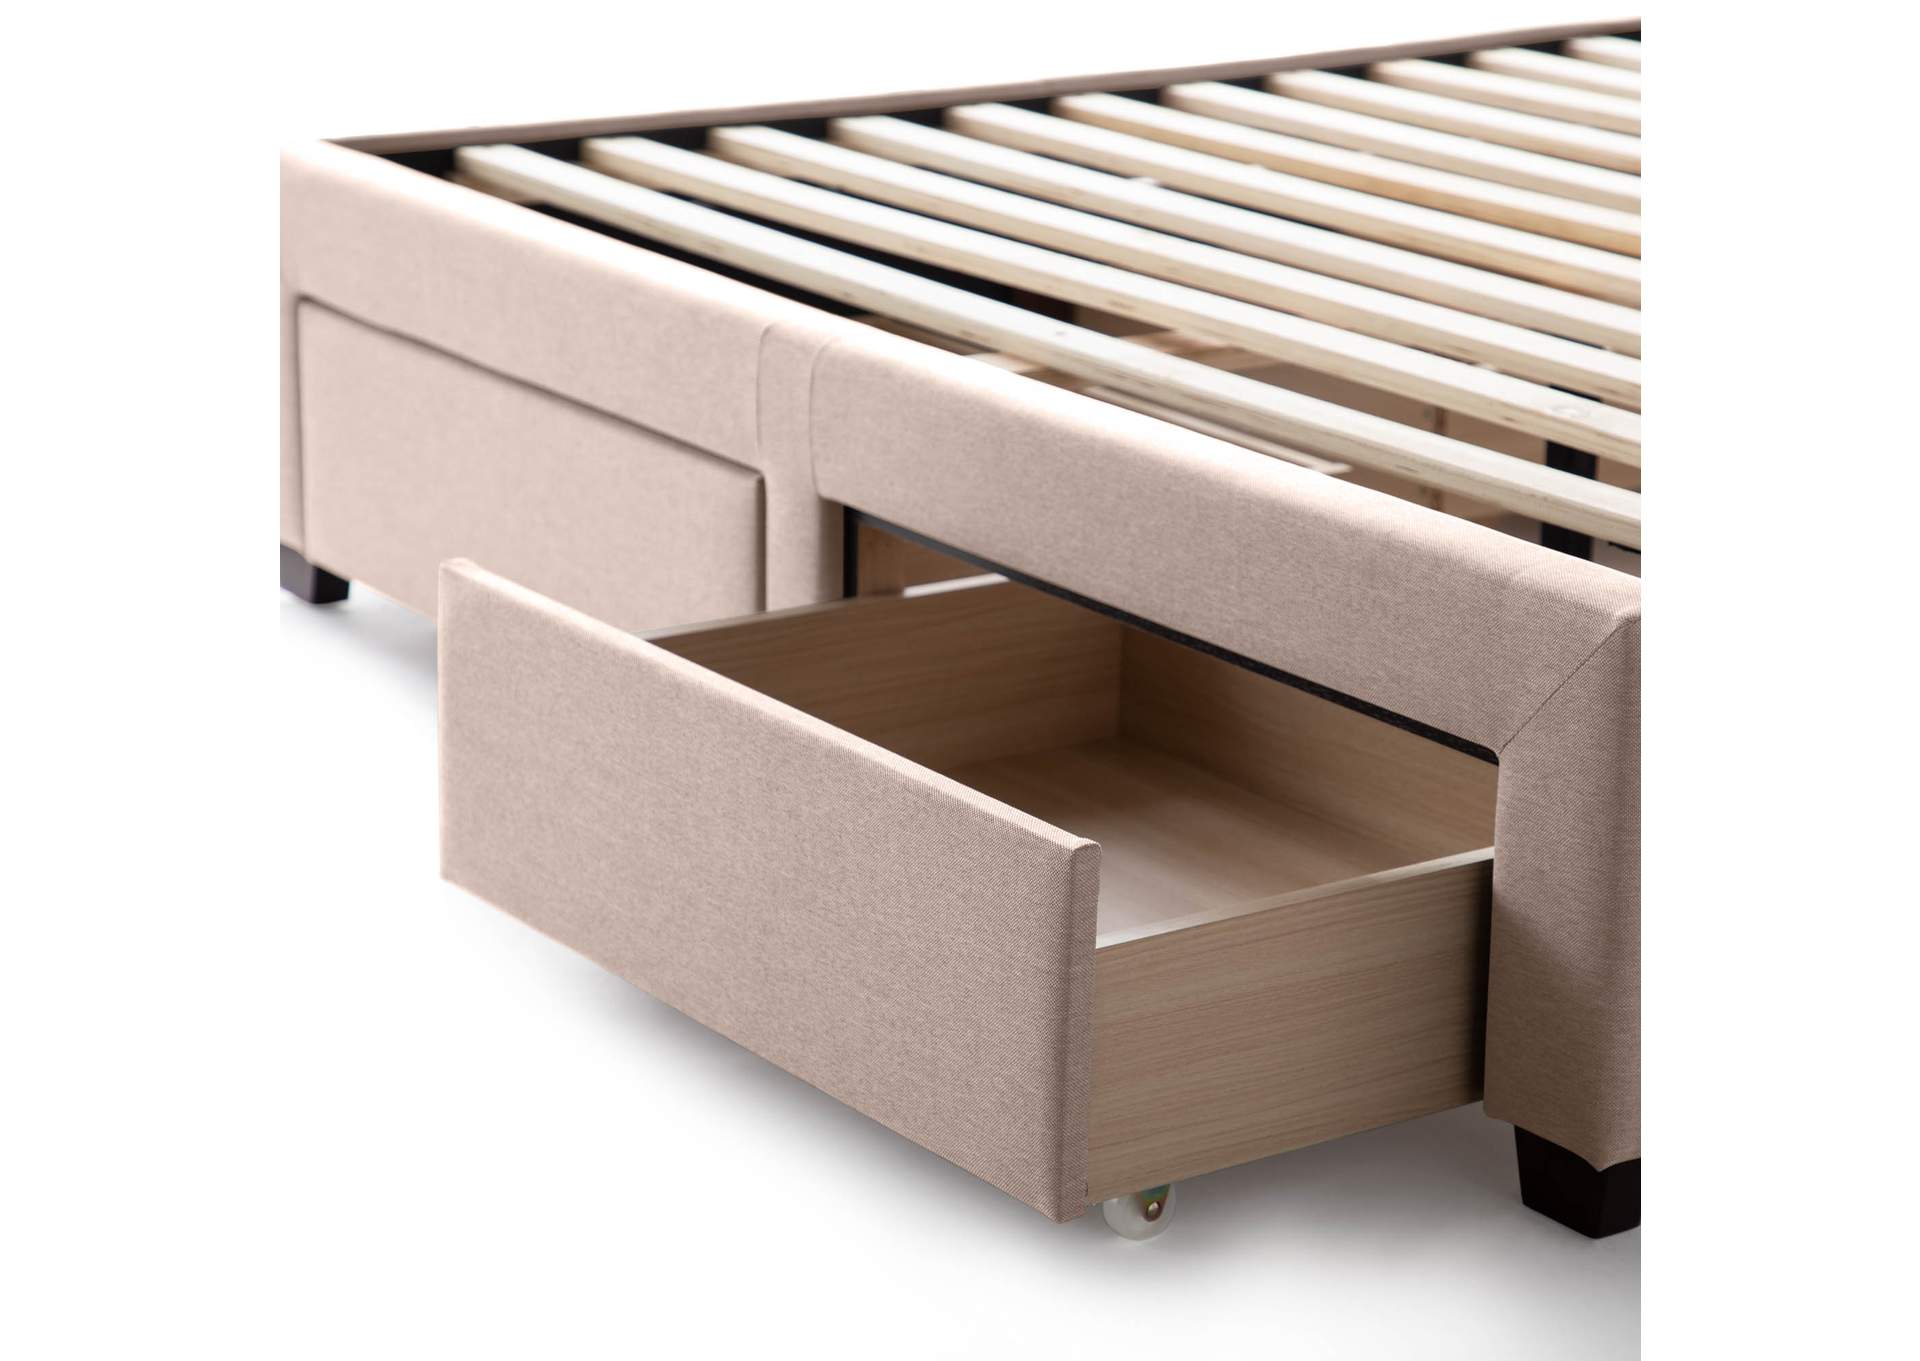 Malouf Charcoal Watson Upholstered Platform Full Bed,Malouf